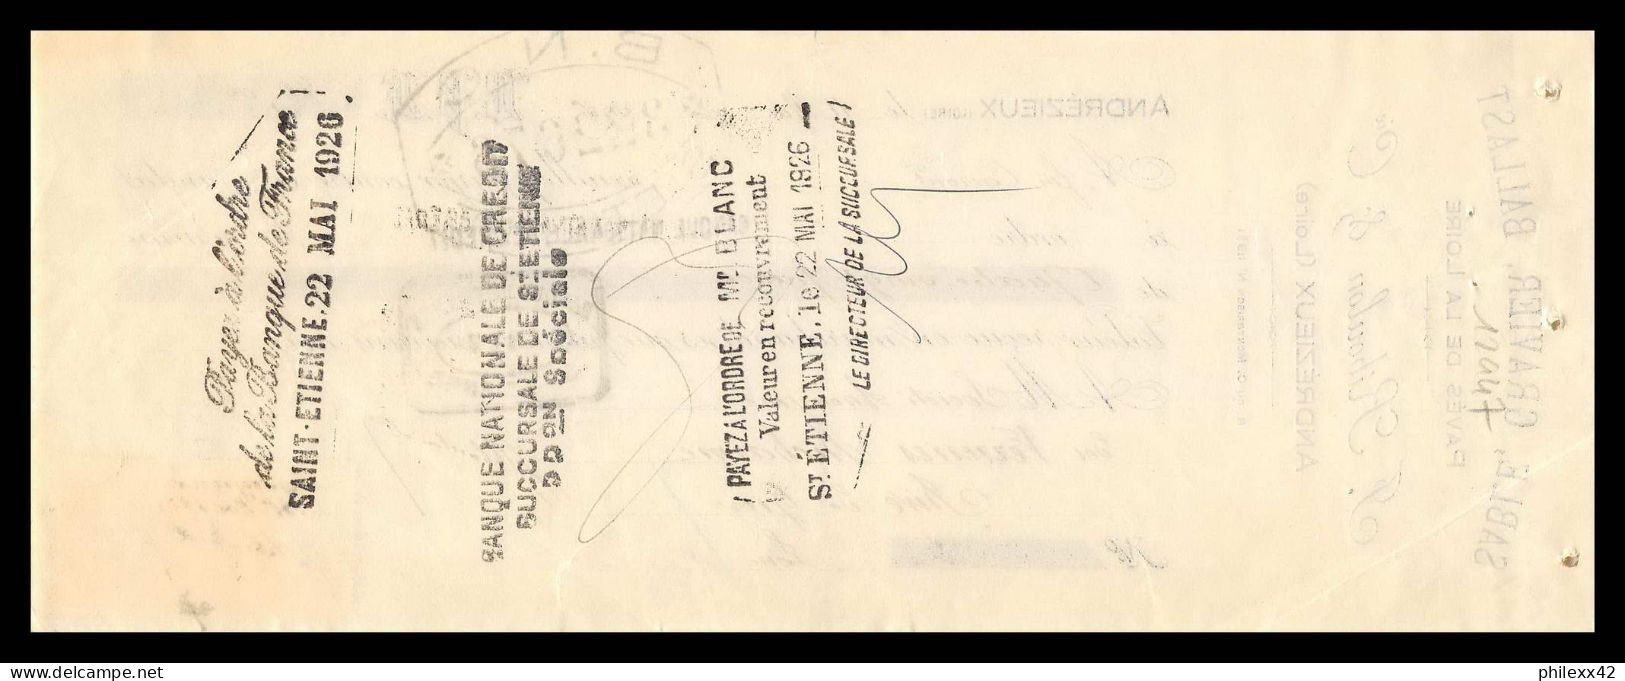 12947 Ballast Andrezieux 1926 Verreries Richarme Rive De Gier Loire 15c Affiches Timbre Fiscal Fiscaux Sur Document  - Briefe U. Dokumente